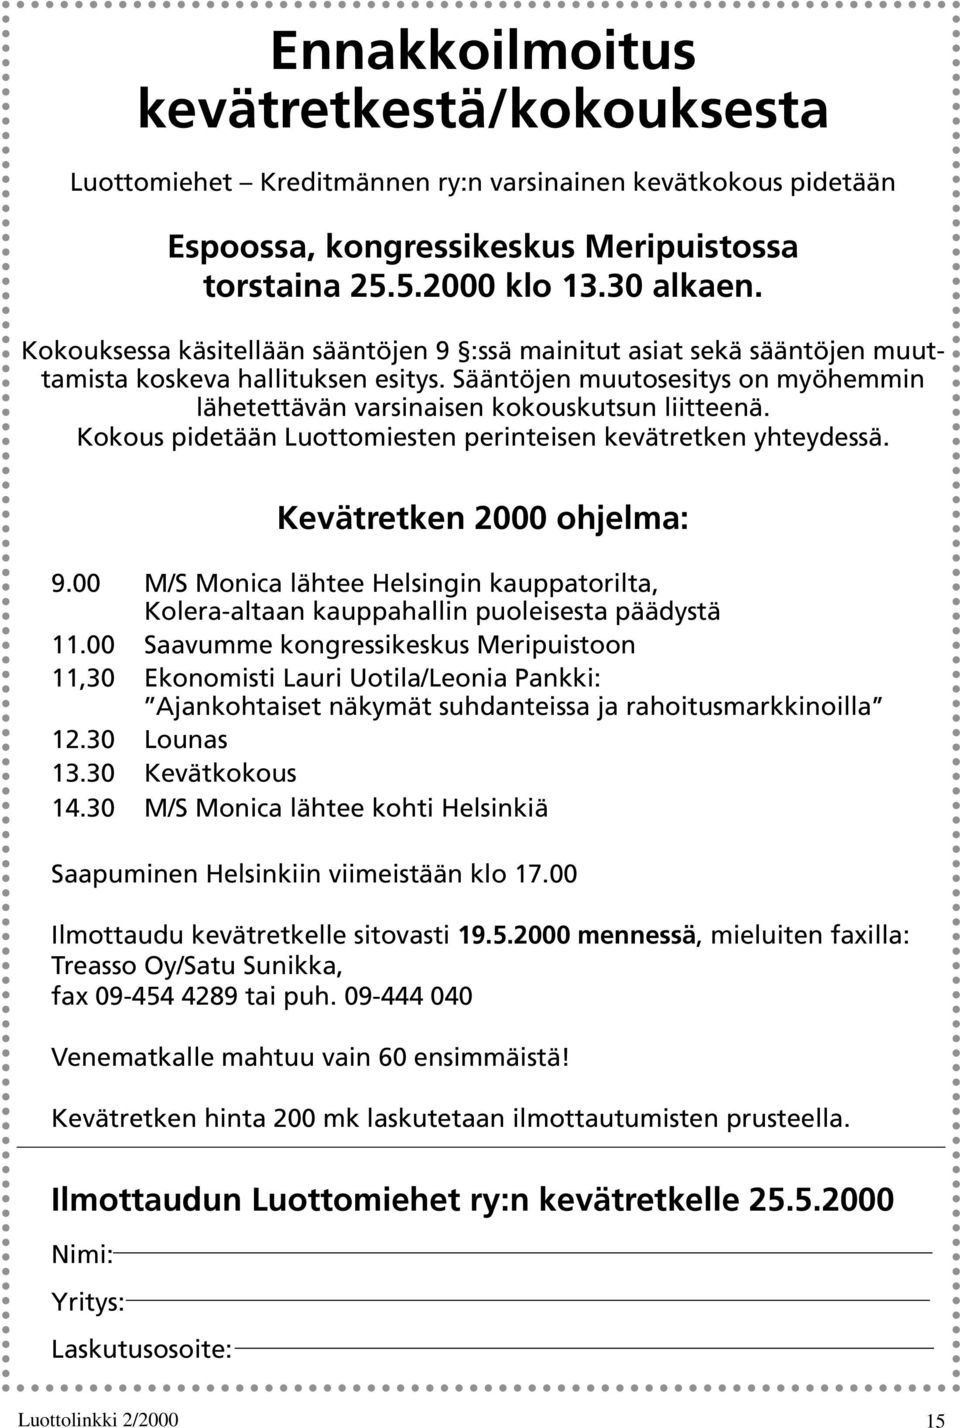 Kokous pidetään Luottomiesten perinteisen kevätretken yhteydessä. Kevätretken 2000 ohjelma: 9.00 M/S Monica lähtee Helsingin kauppatorilta, Kolera-altaan kauppahallin puoleisesta päädystä 11.